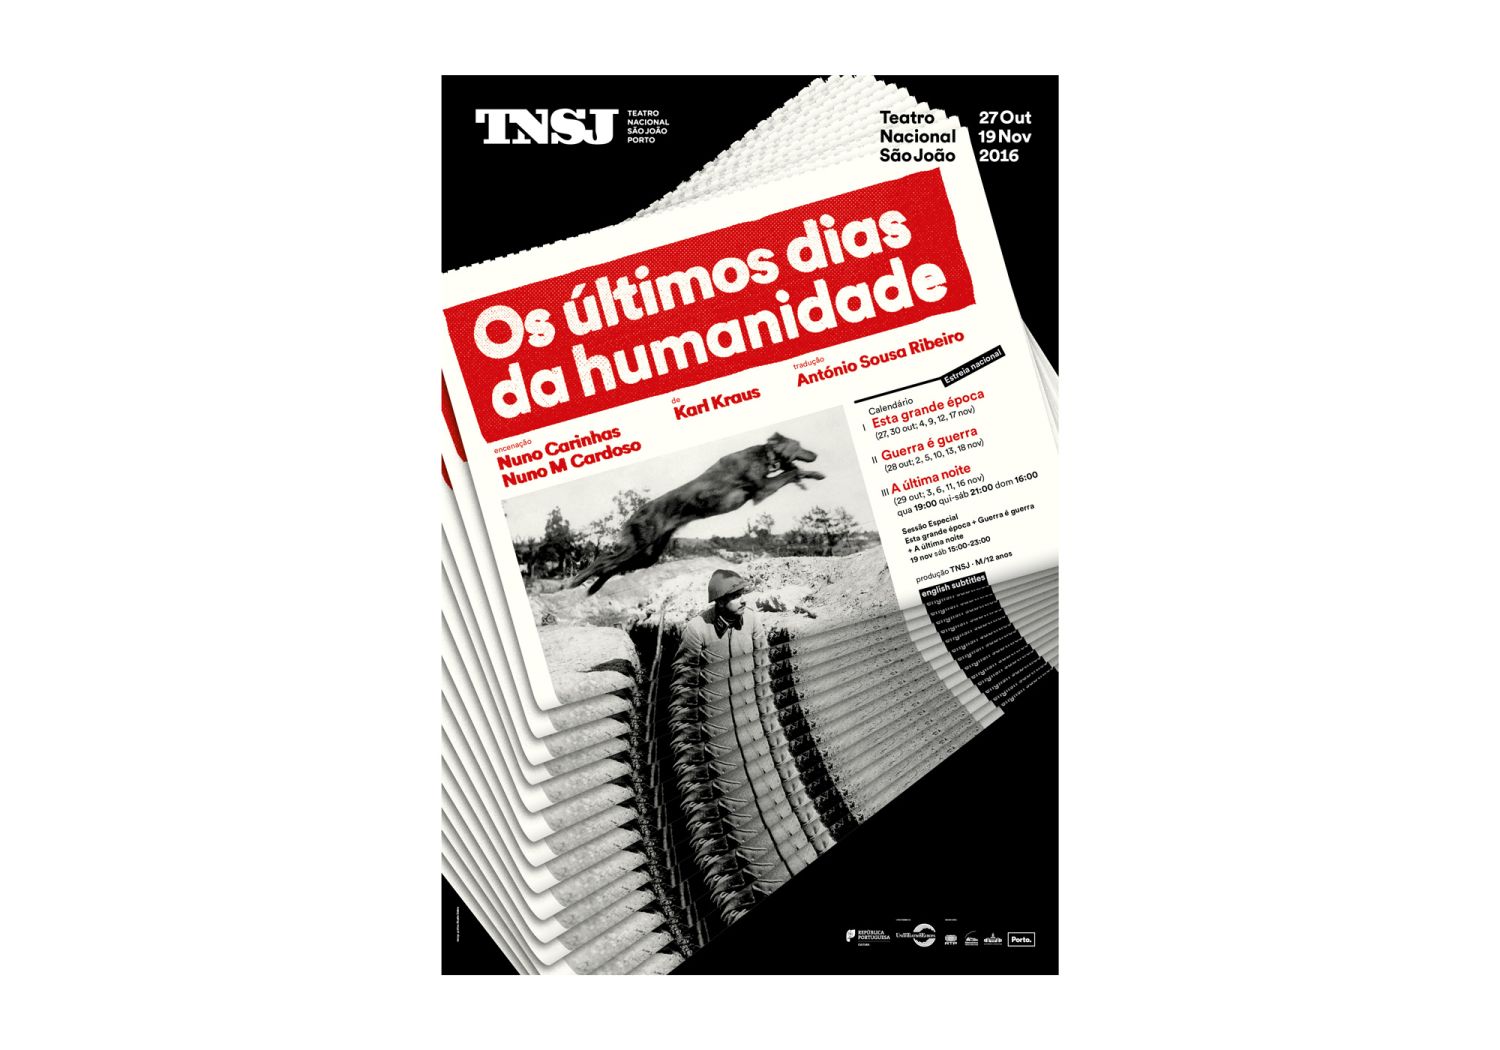 São João National Theatre Posters 2017-2018 Image:8 dobra-tnsj-Humanidade